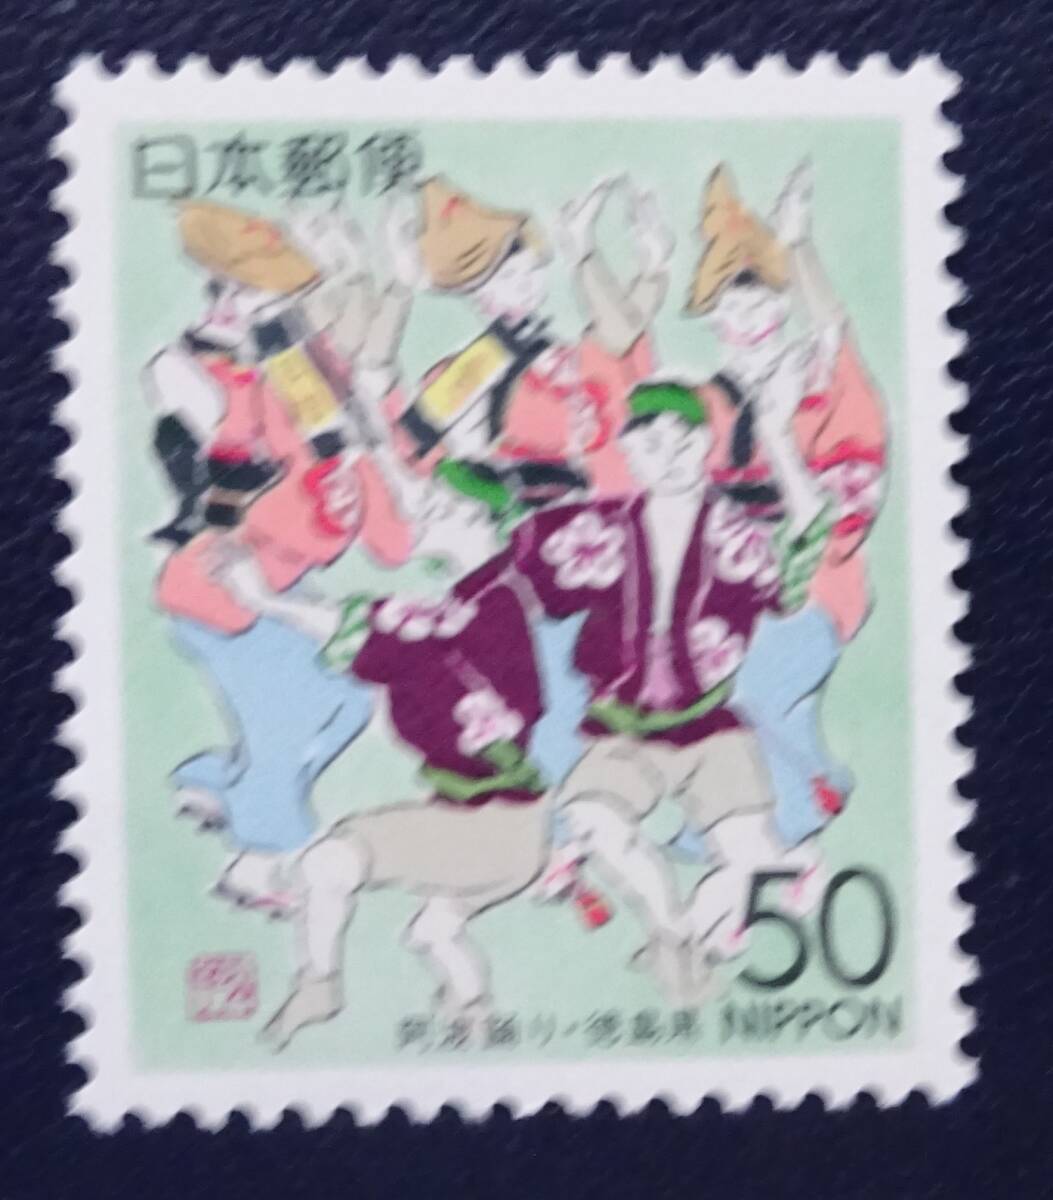 B7 ふるさと切手 1994年 徳島県 阿波踊り 未使用 美品の画像1